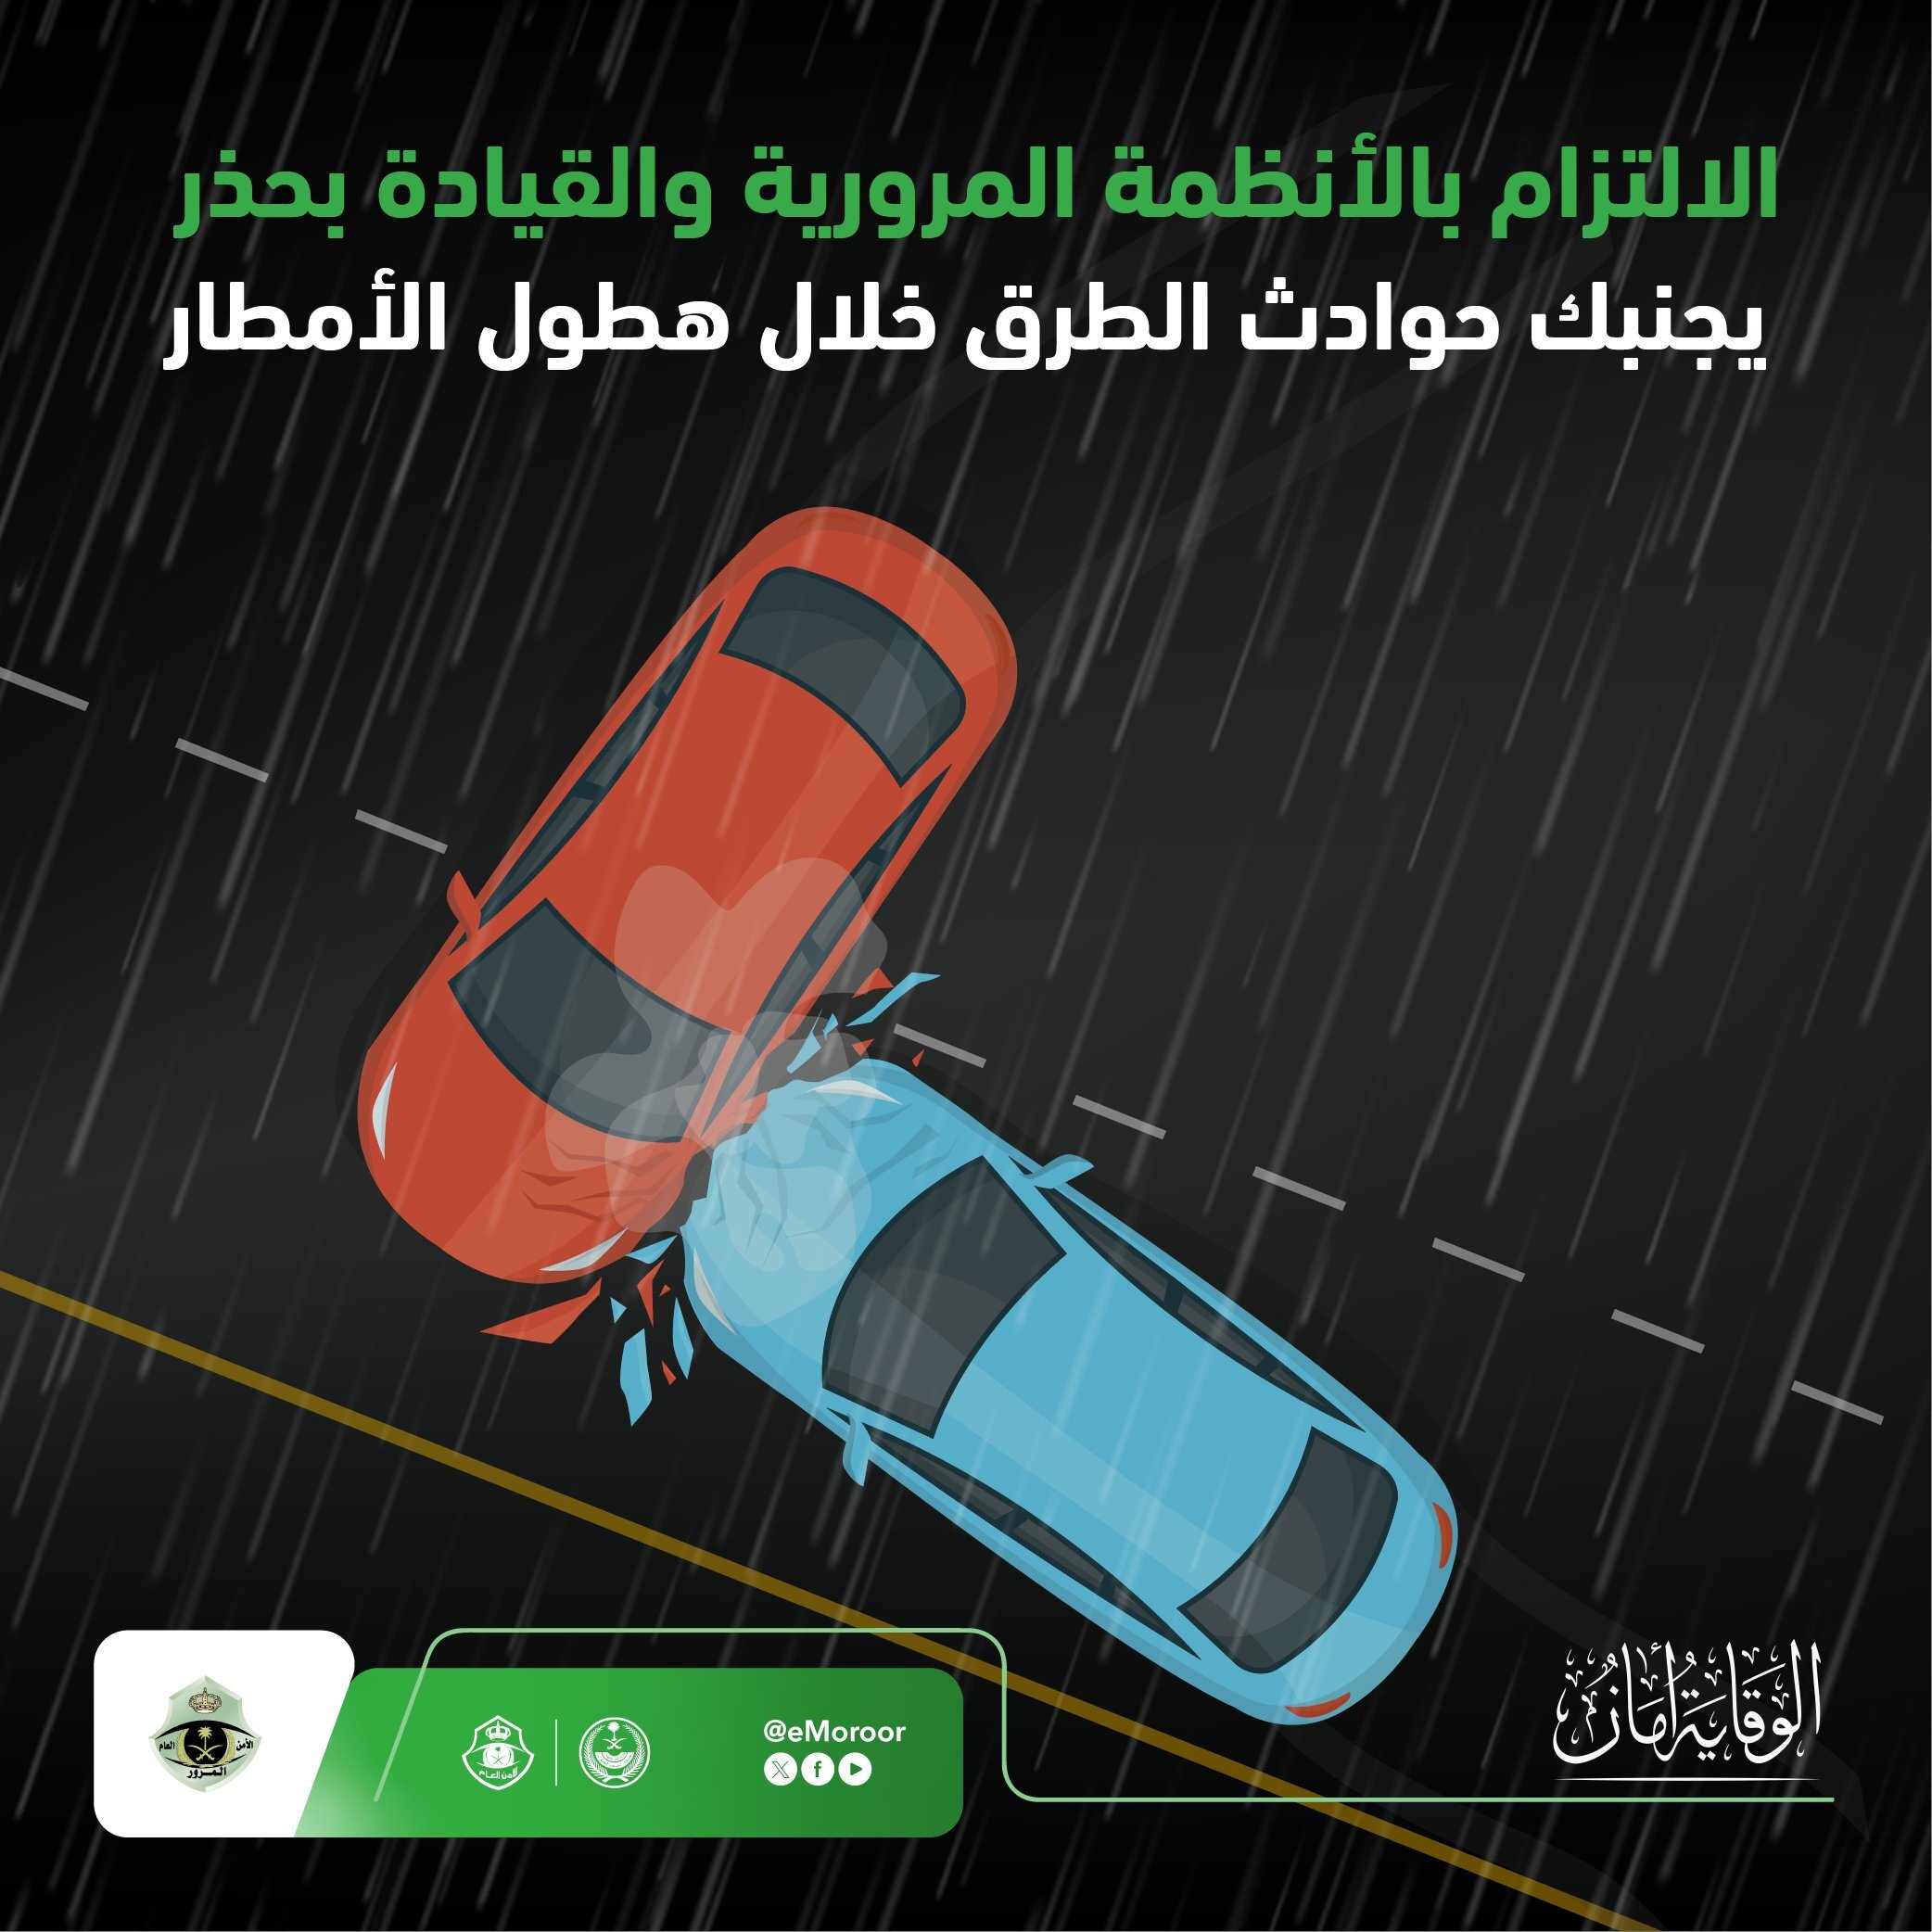 "المرور" يوجه 6 نصائح هامة لقيادة آمنة تحت الأمطار 2